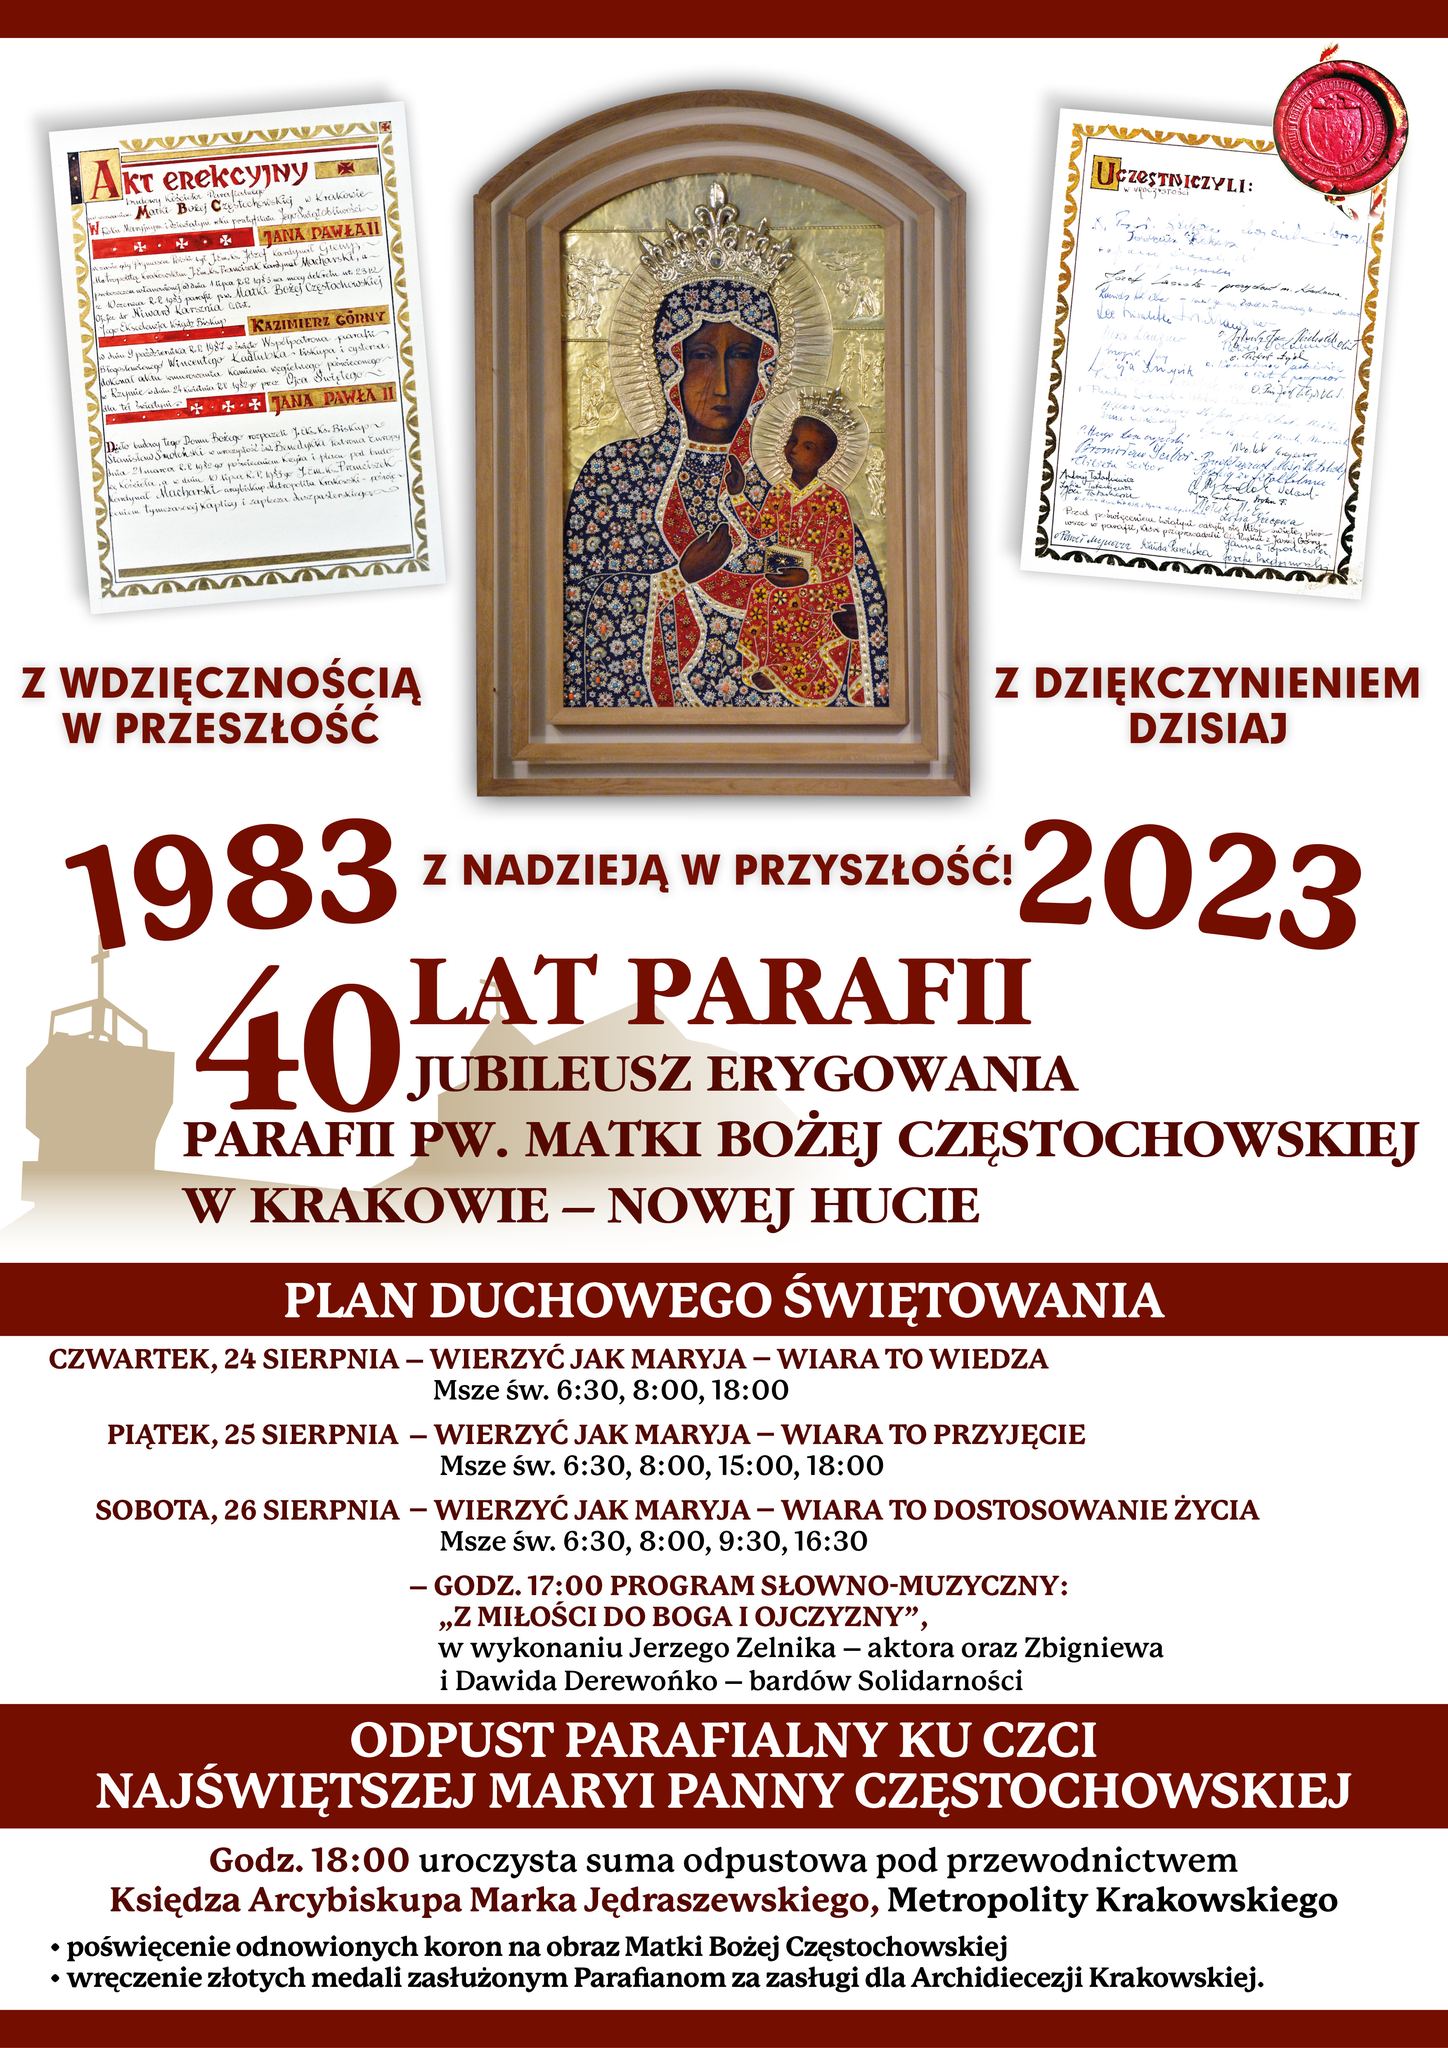 Jubileusz erygowania parafii Matki Bożej Częstochowskiej w Krakowie-Nowej Hucie